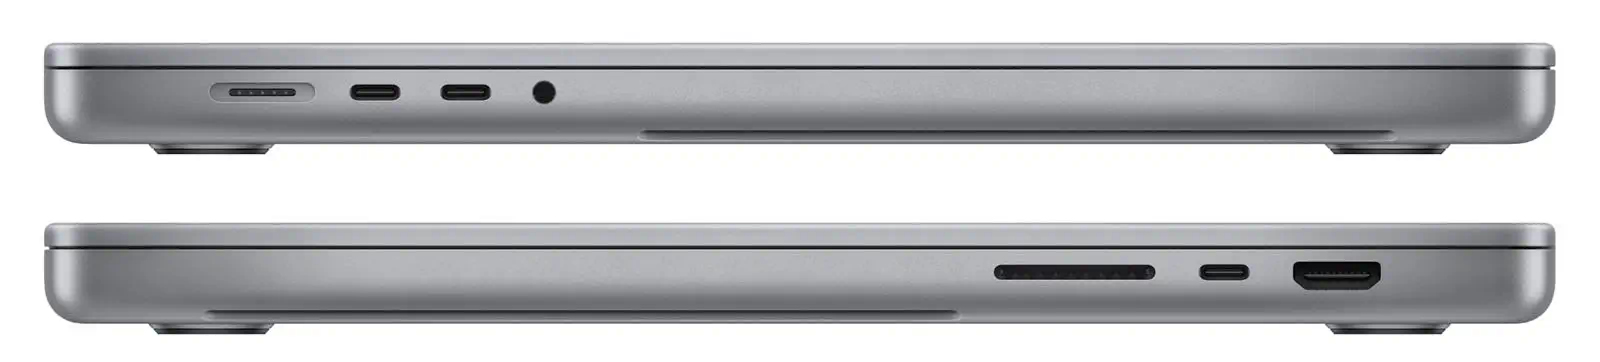 ابعاد و اندازه MacBook Pro MNW83